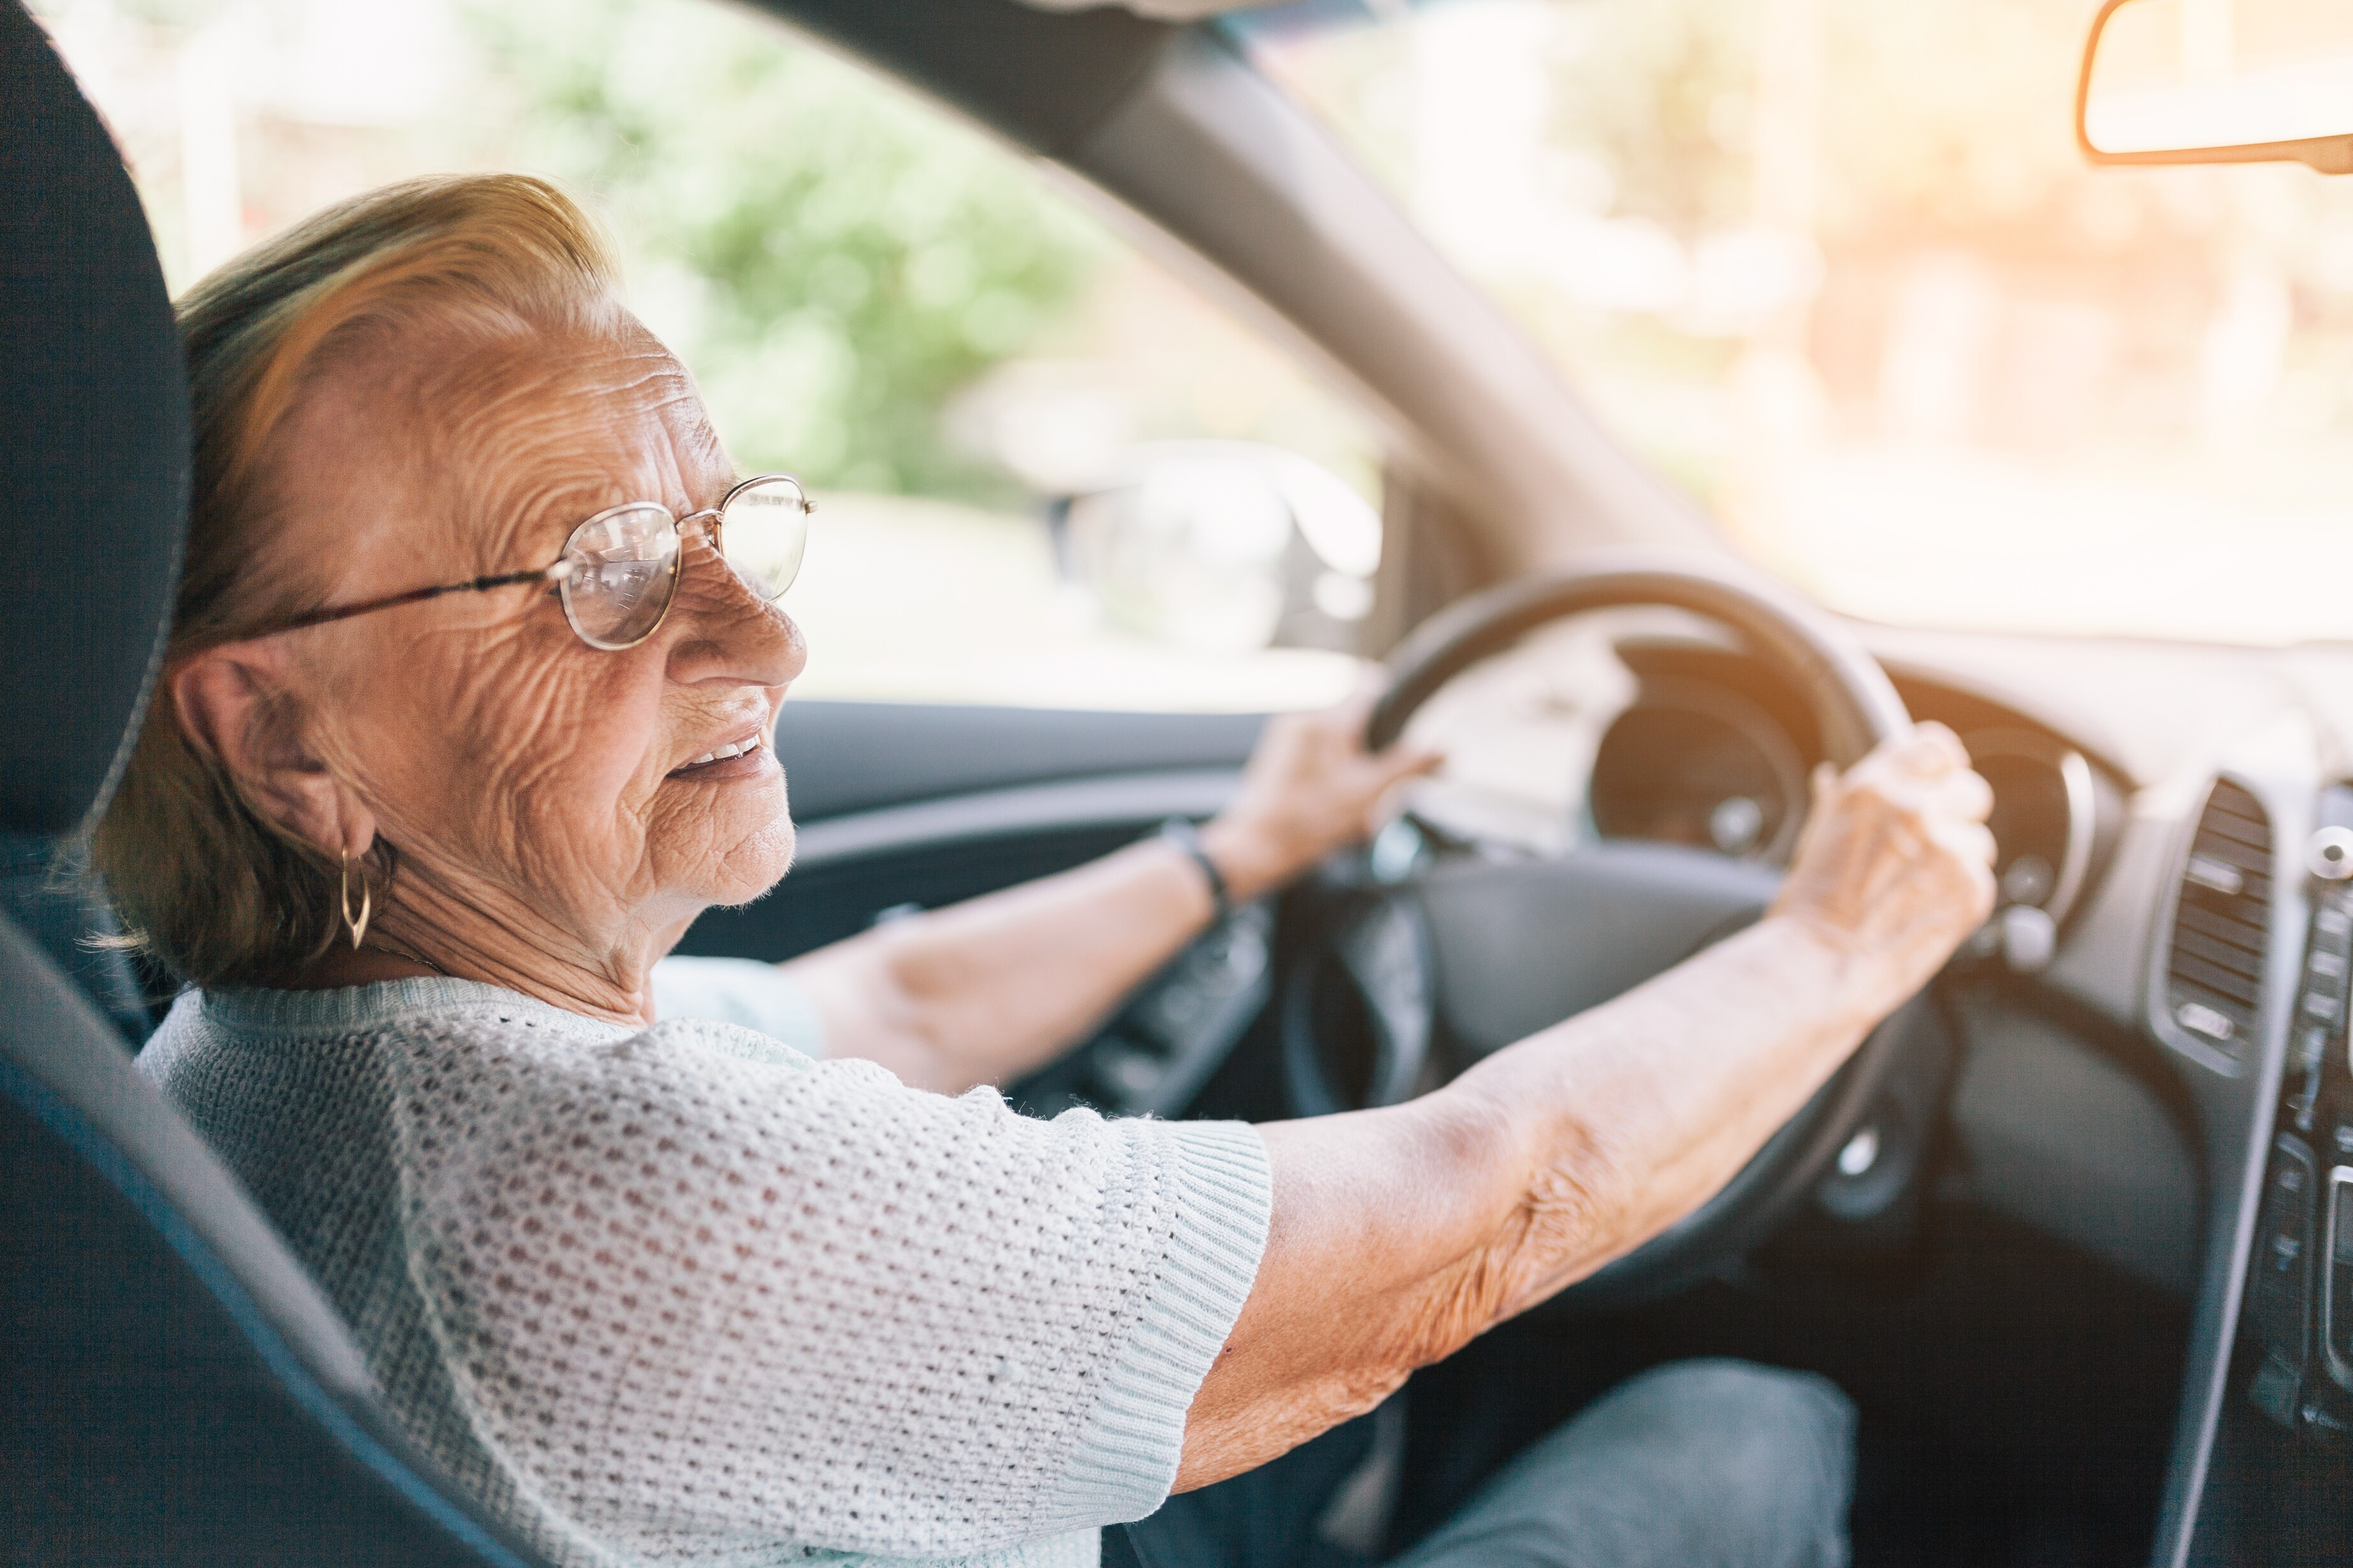 8 seniors sur 10 peuvent encore conduire en toute sécurité